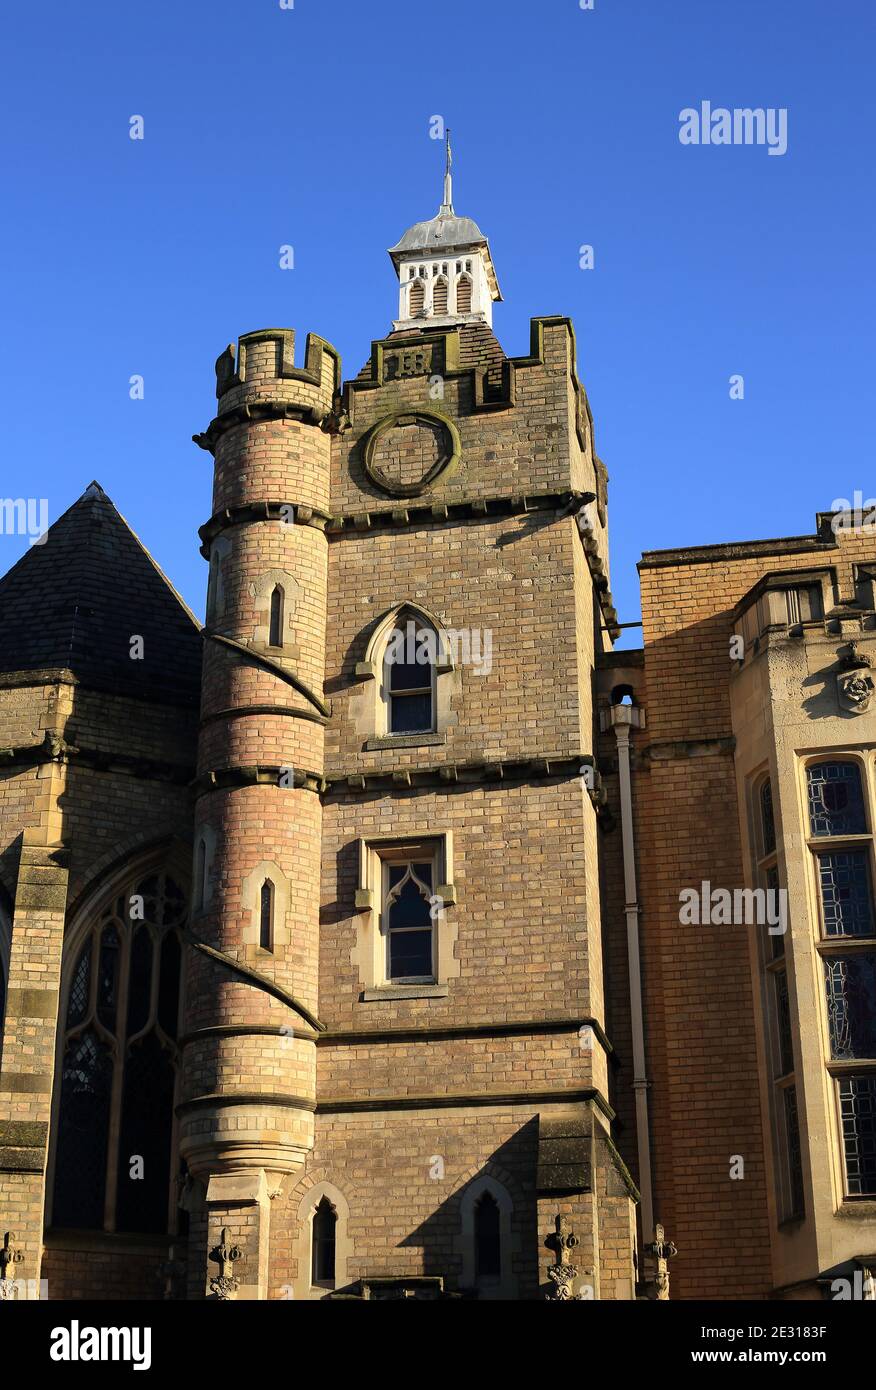 King Edward vi college tower, Stourbridge, West midlands, England, UK. Stock Photo